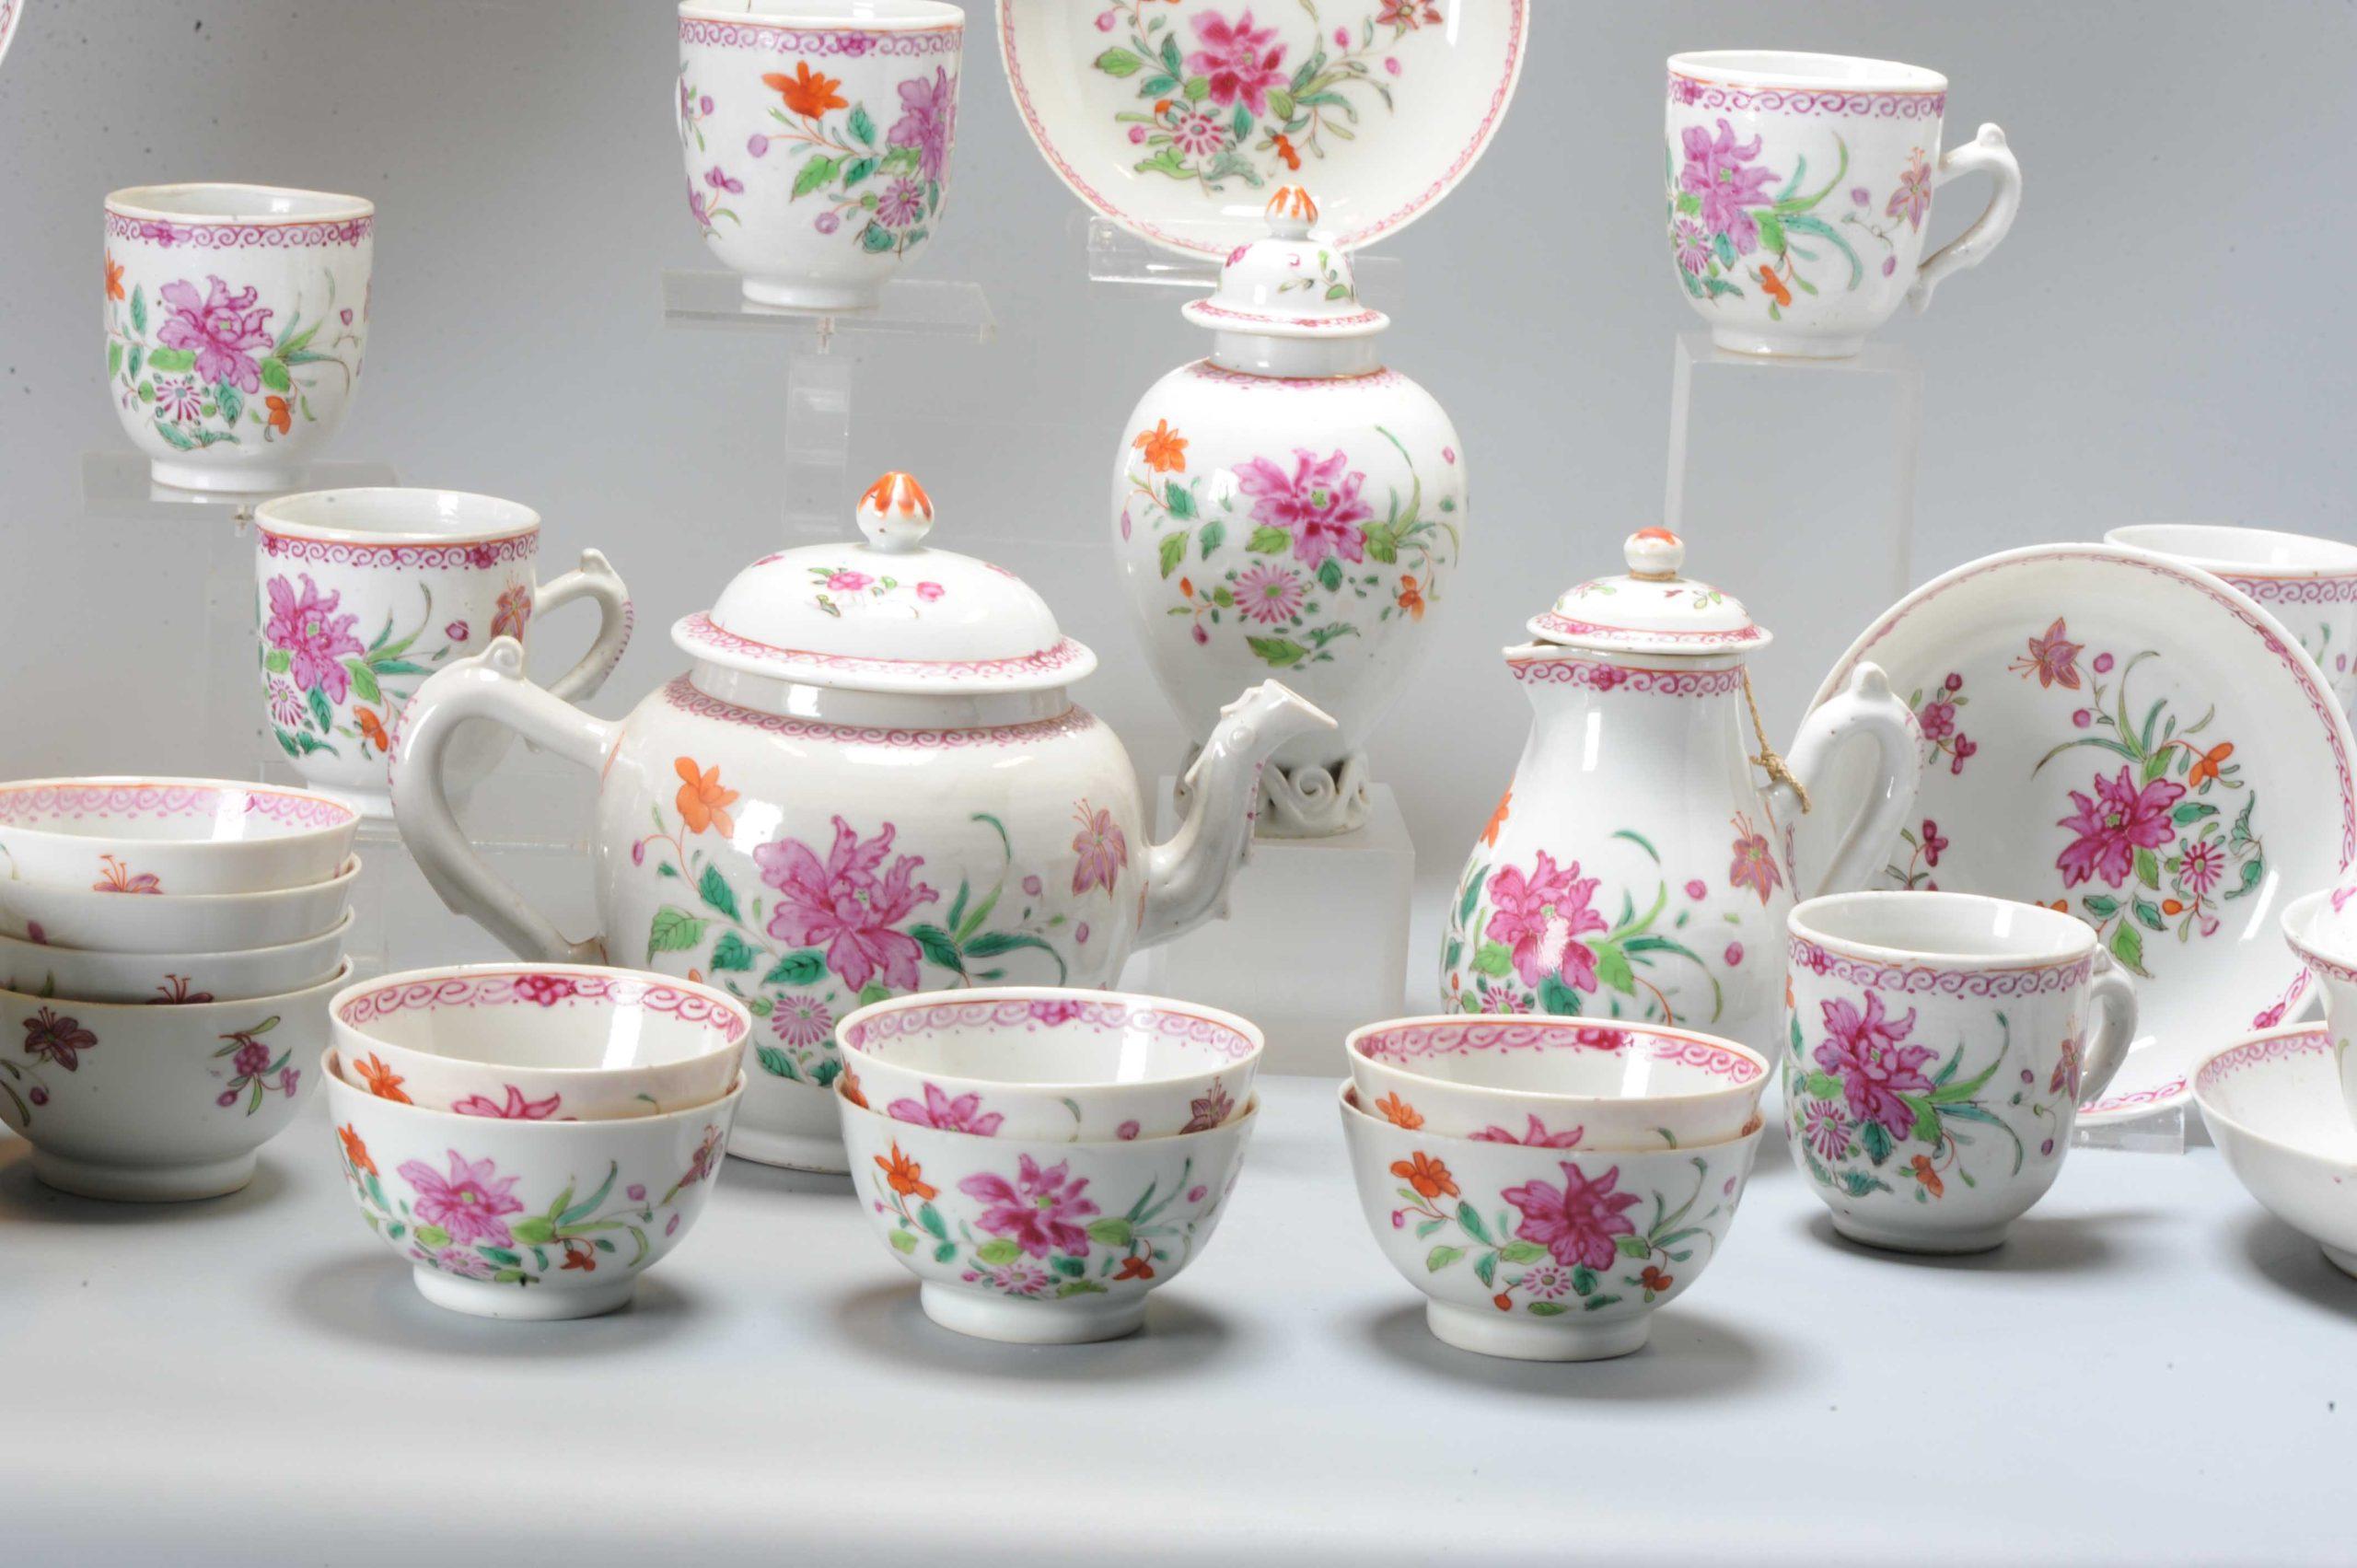 Qianlong, 18. Jahrhundert, Famille Rose. Sehr schöne Malerei
1 Teekanne
1. Milchkännchen
1. Teekanne
1. Schale mit Deckel und Unterteller für Süßigkeiten
1. Waschschüssel mit Unterteller
10 Teeschalen
6 Teetassen
10 Untertassen

Zusätzliche